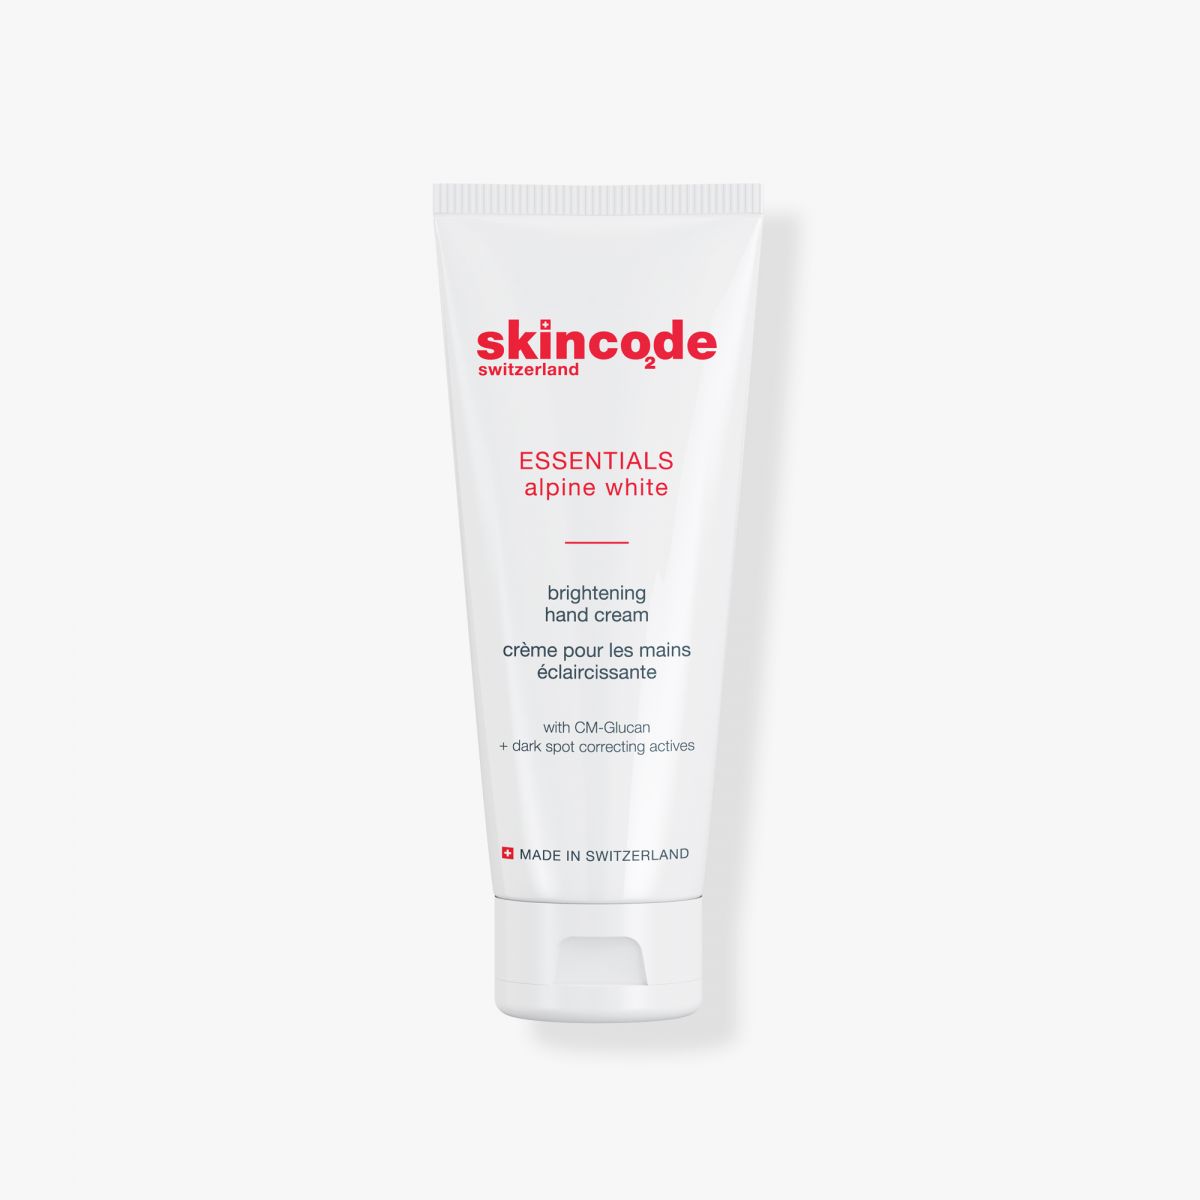 Skincode Brightening Hand Cream - Kem dưỡng tay làm trắng mịn và bảo vệ da, ngăn ngừa đốm nâu, đồi mồi